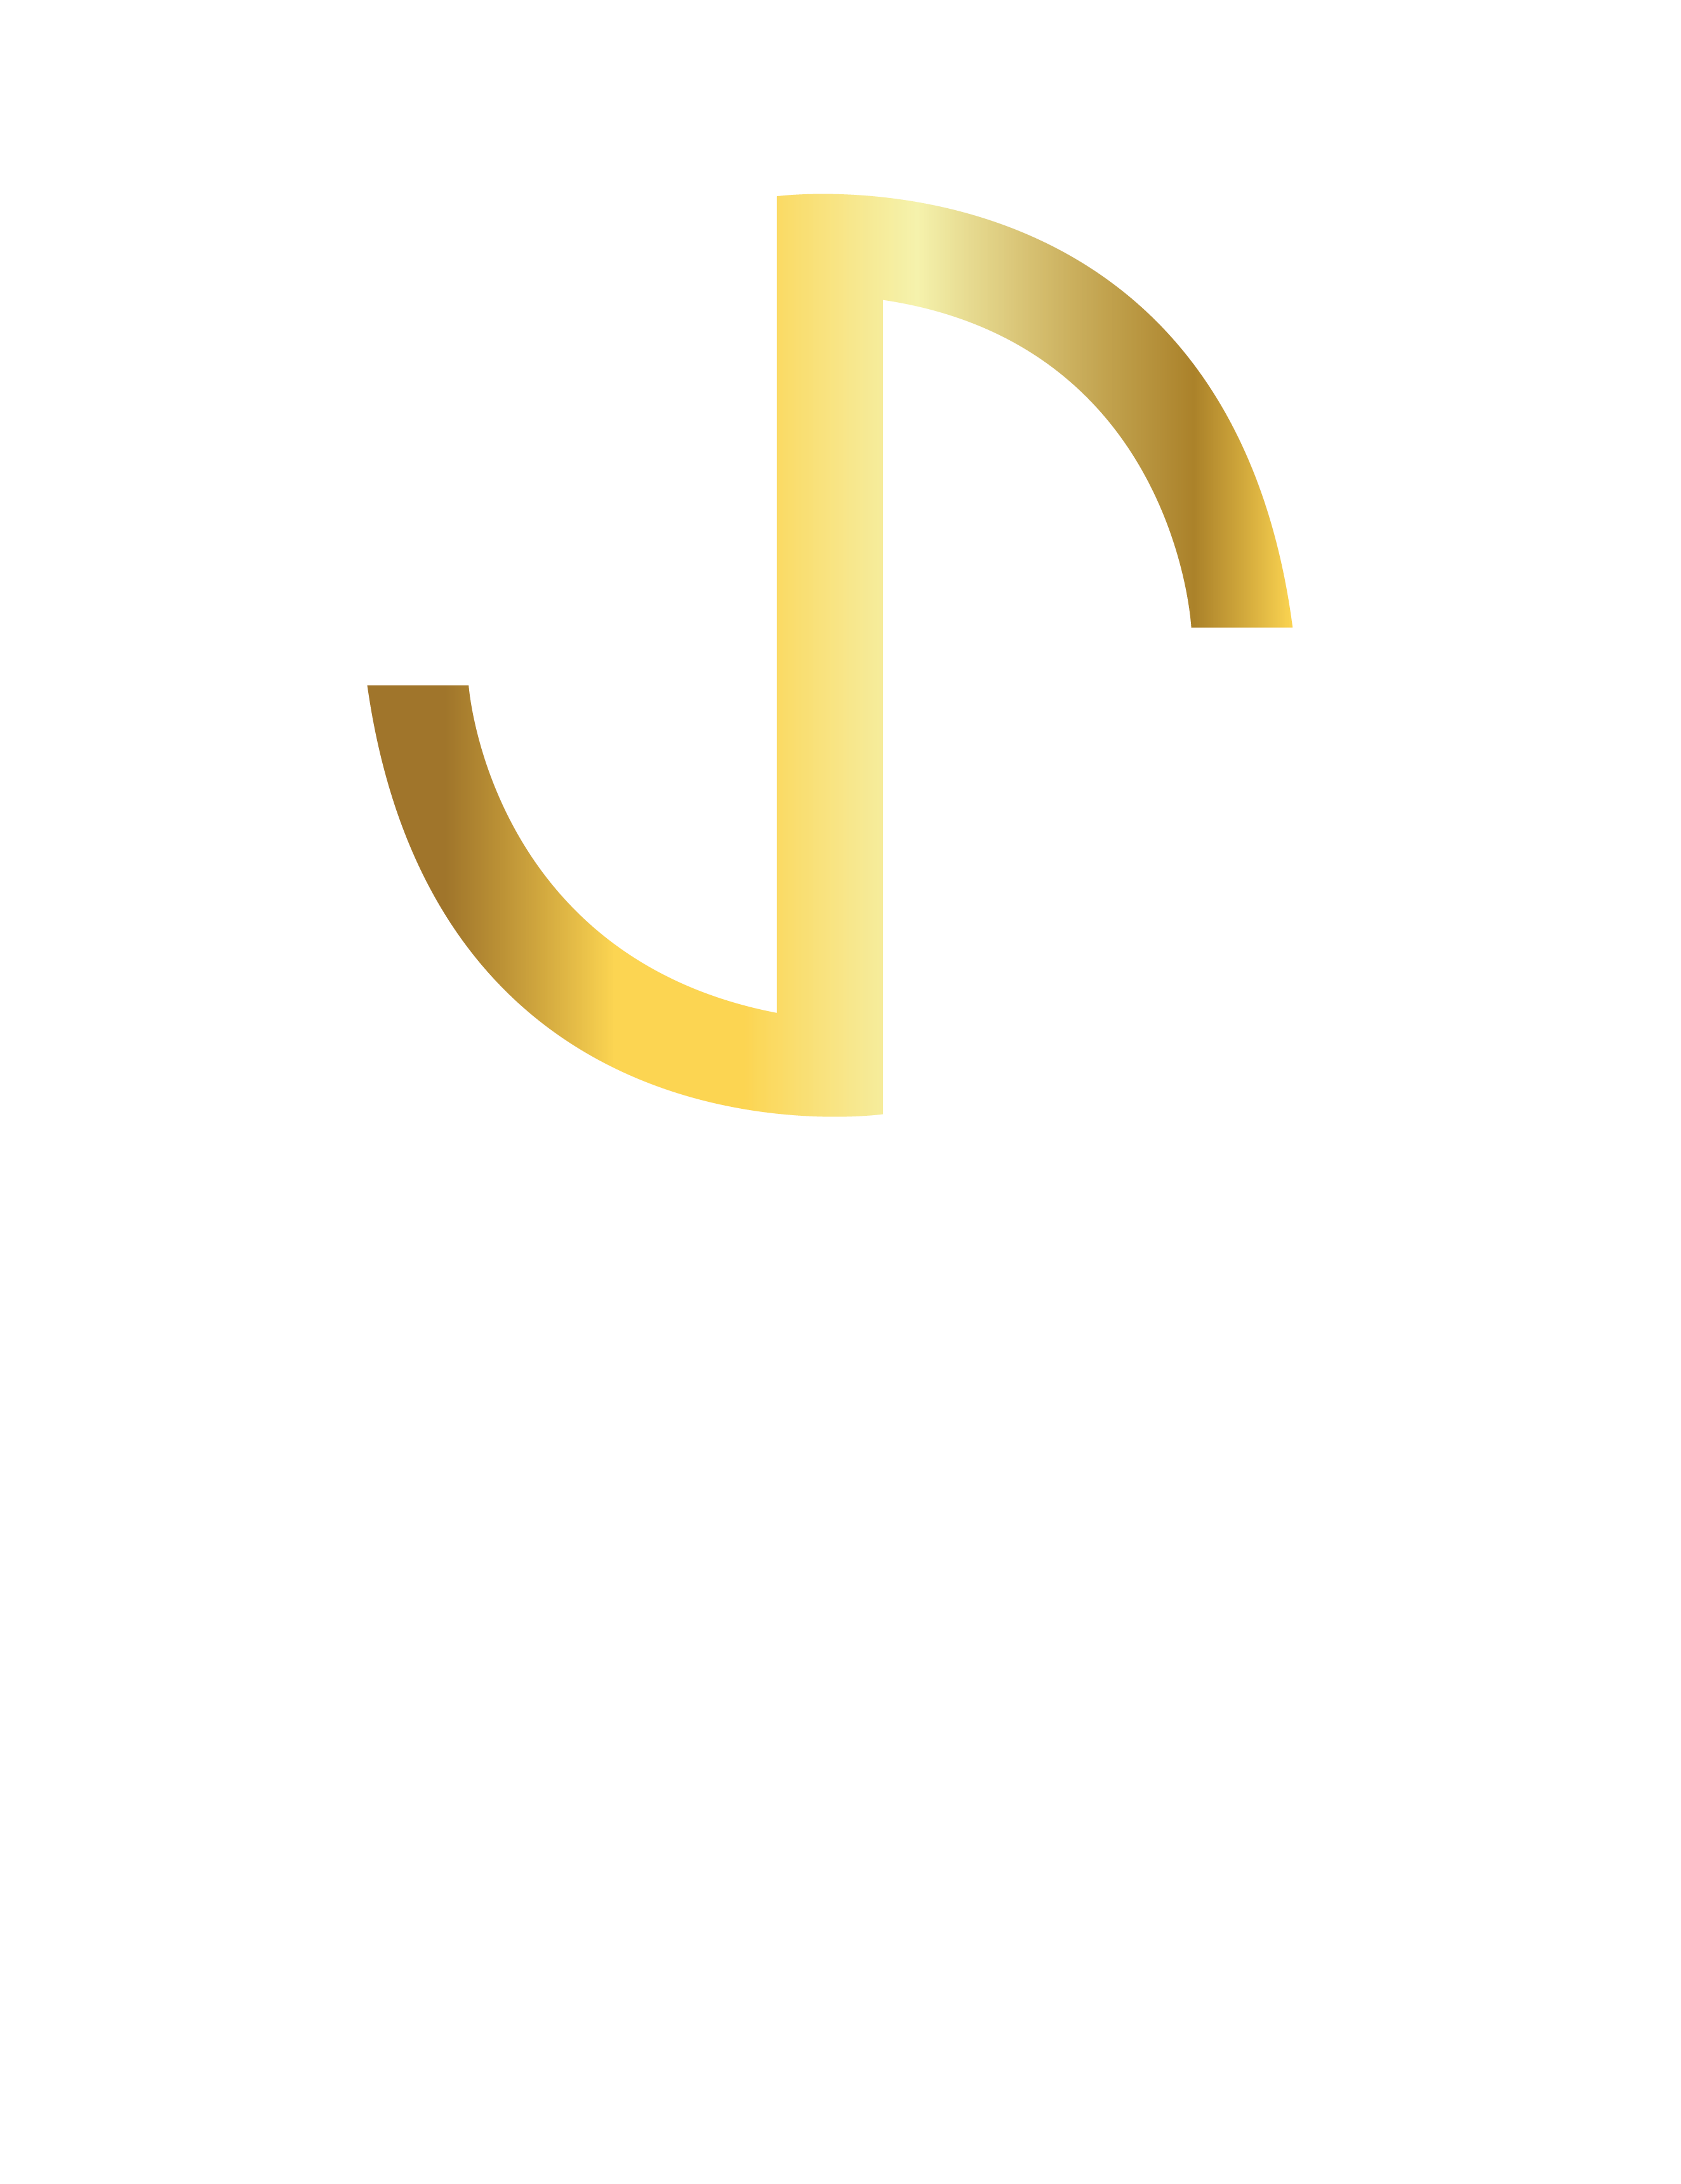 Slide Up